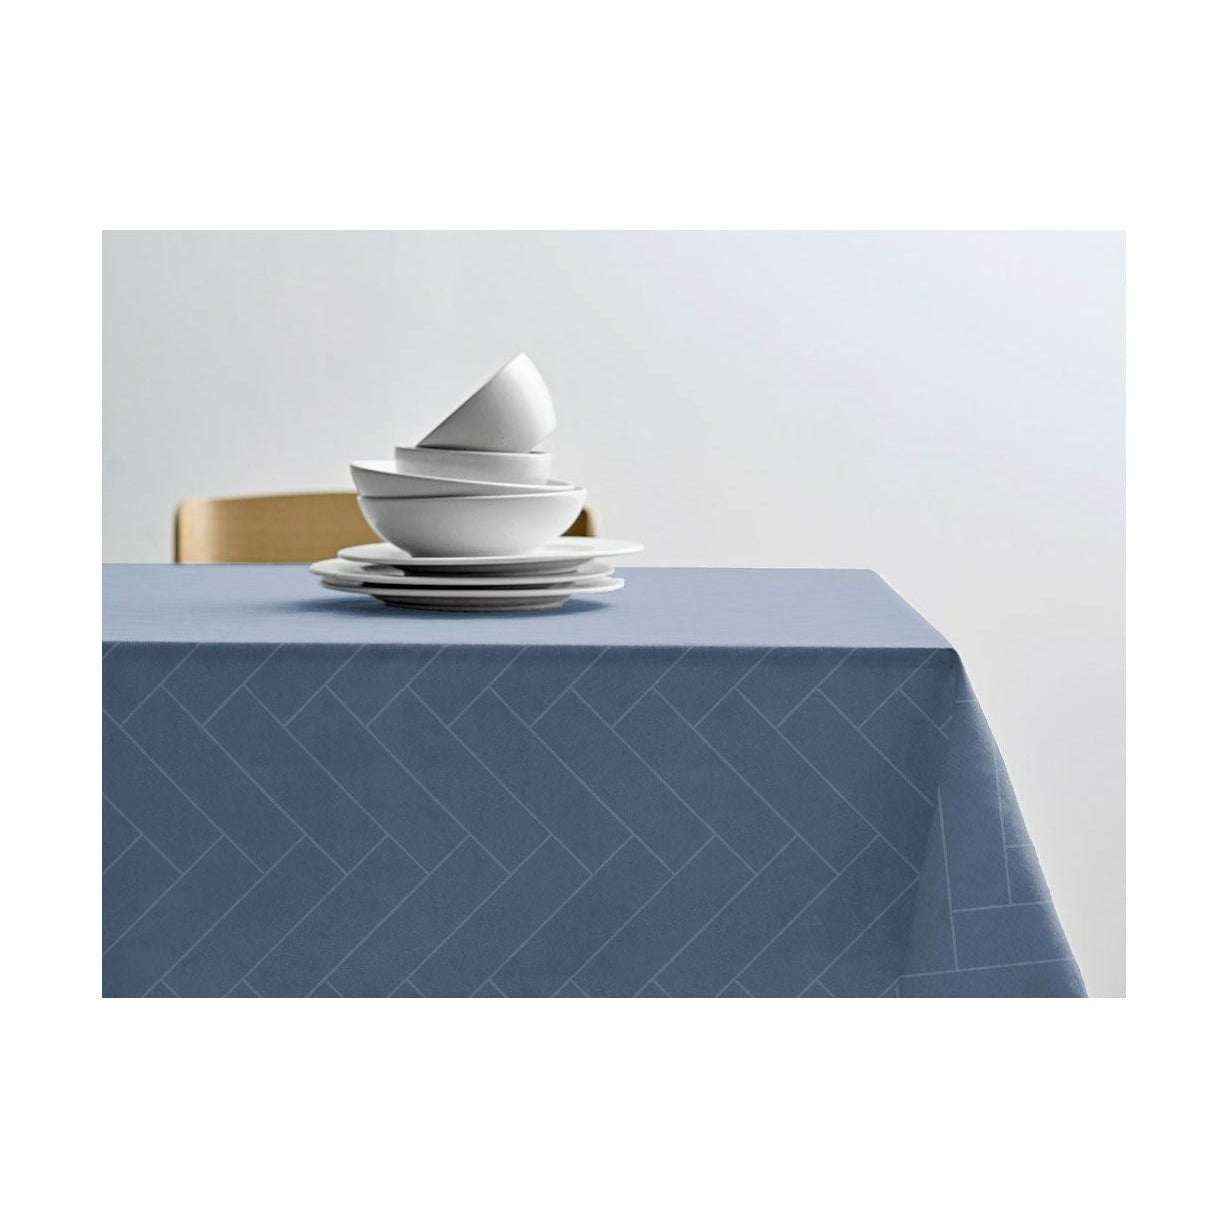 Södahl Tegels Damast Table Cloth 270x140 cm, Sky Blue